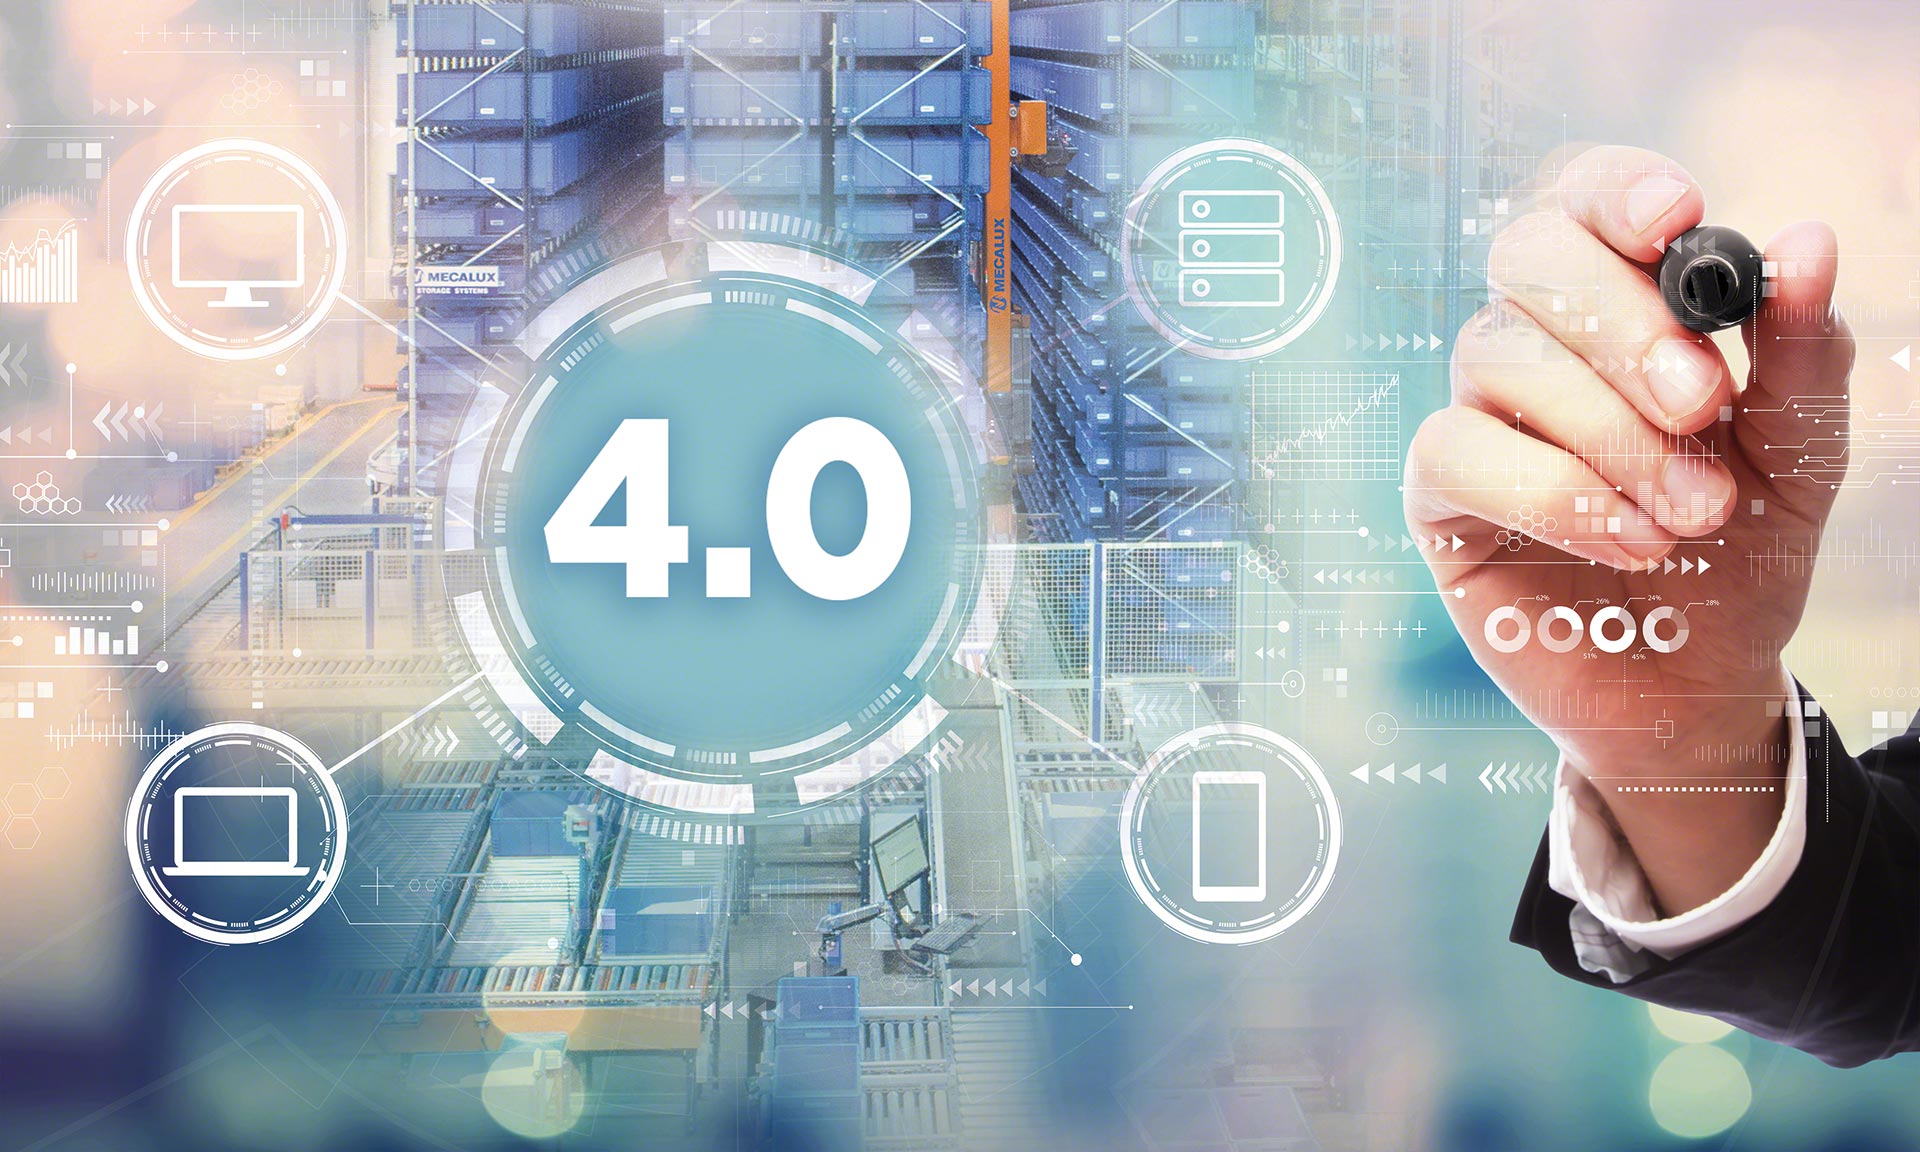 La industria 4.0 cuenta con ejemplos de clientes que utilizan la última tecnología para optimizar su logística